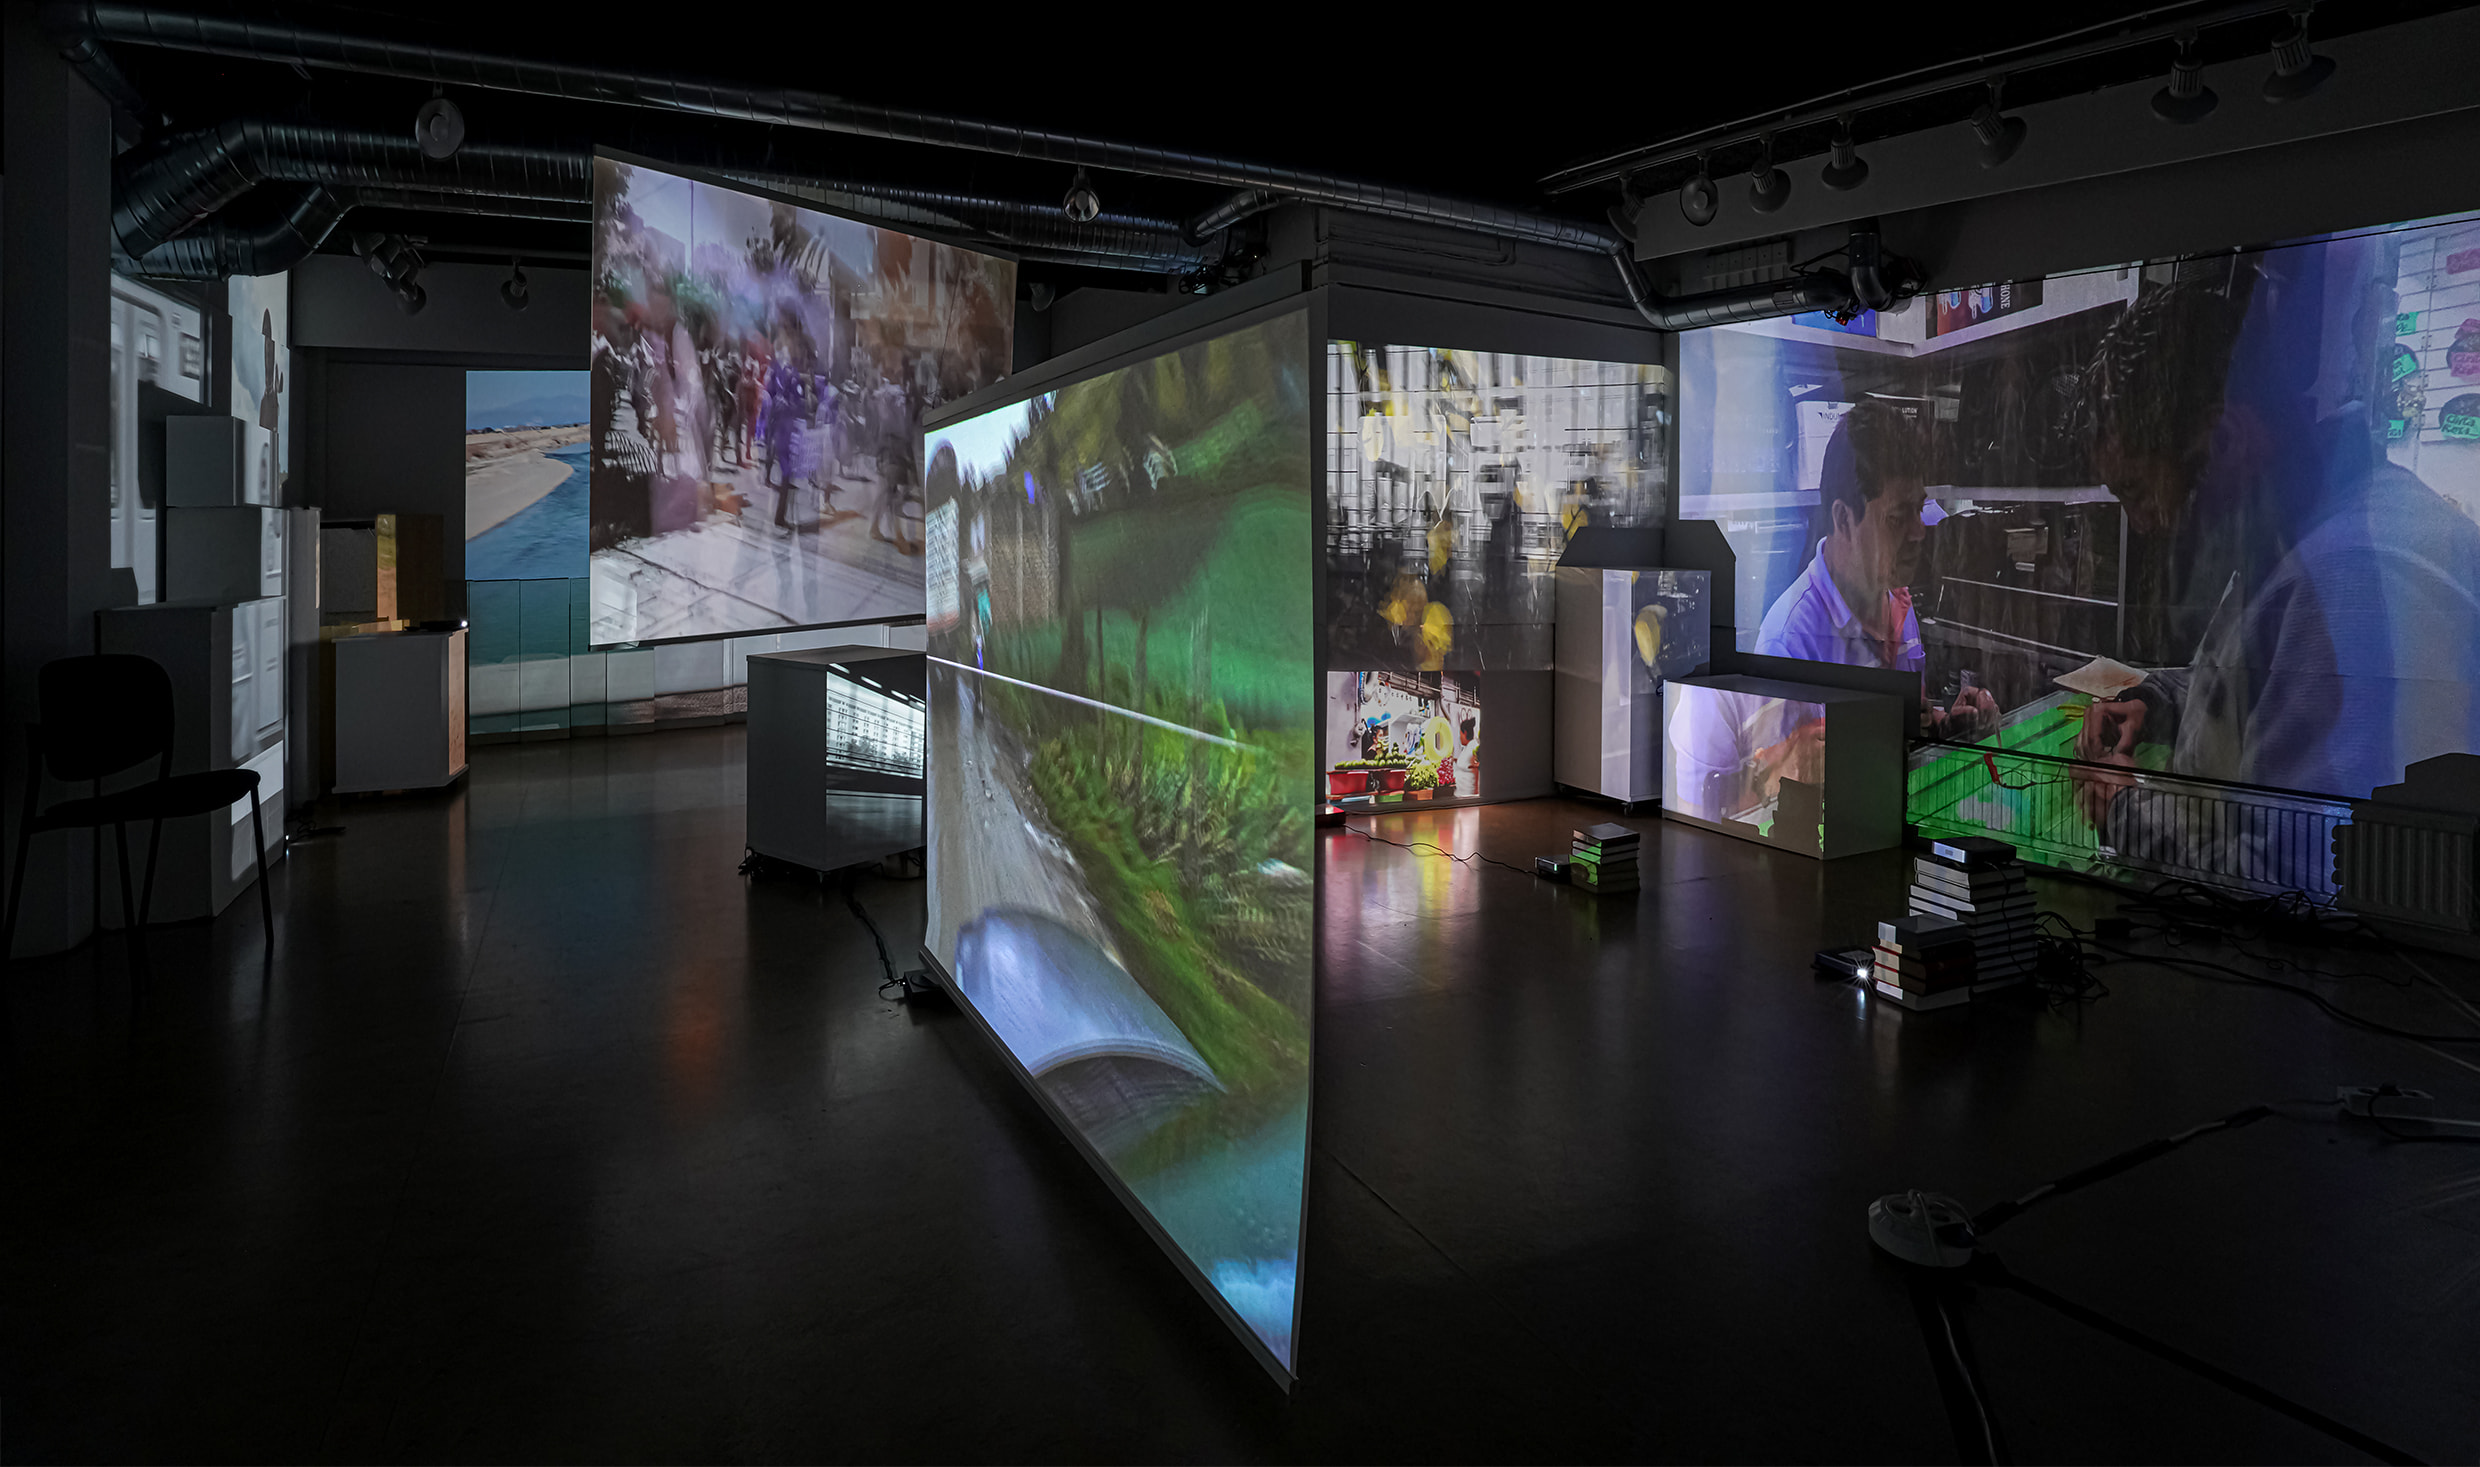 Fotografi av rumslig miljö med flera skärmar på vägg, golv och hängande från tak. Film med människor projiceras på skärmarna.